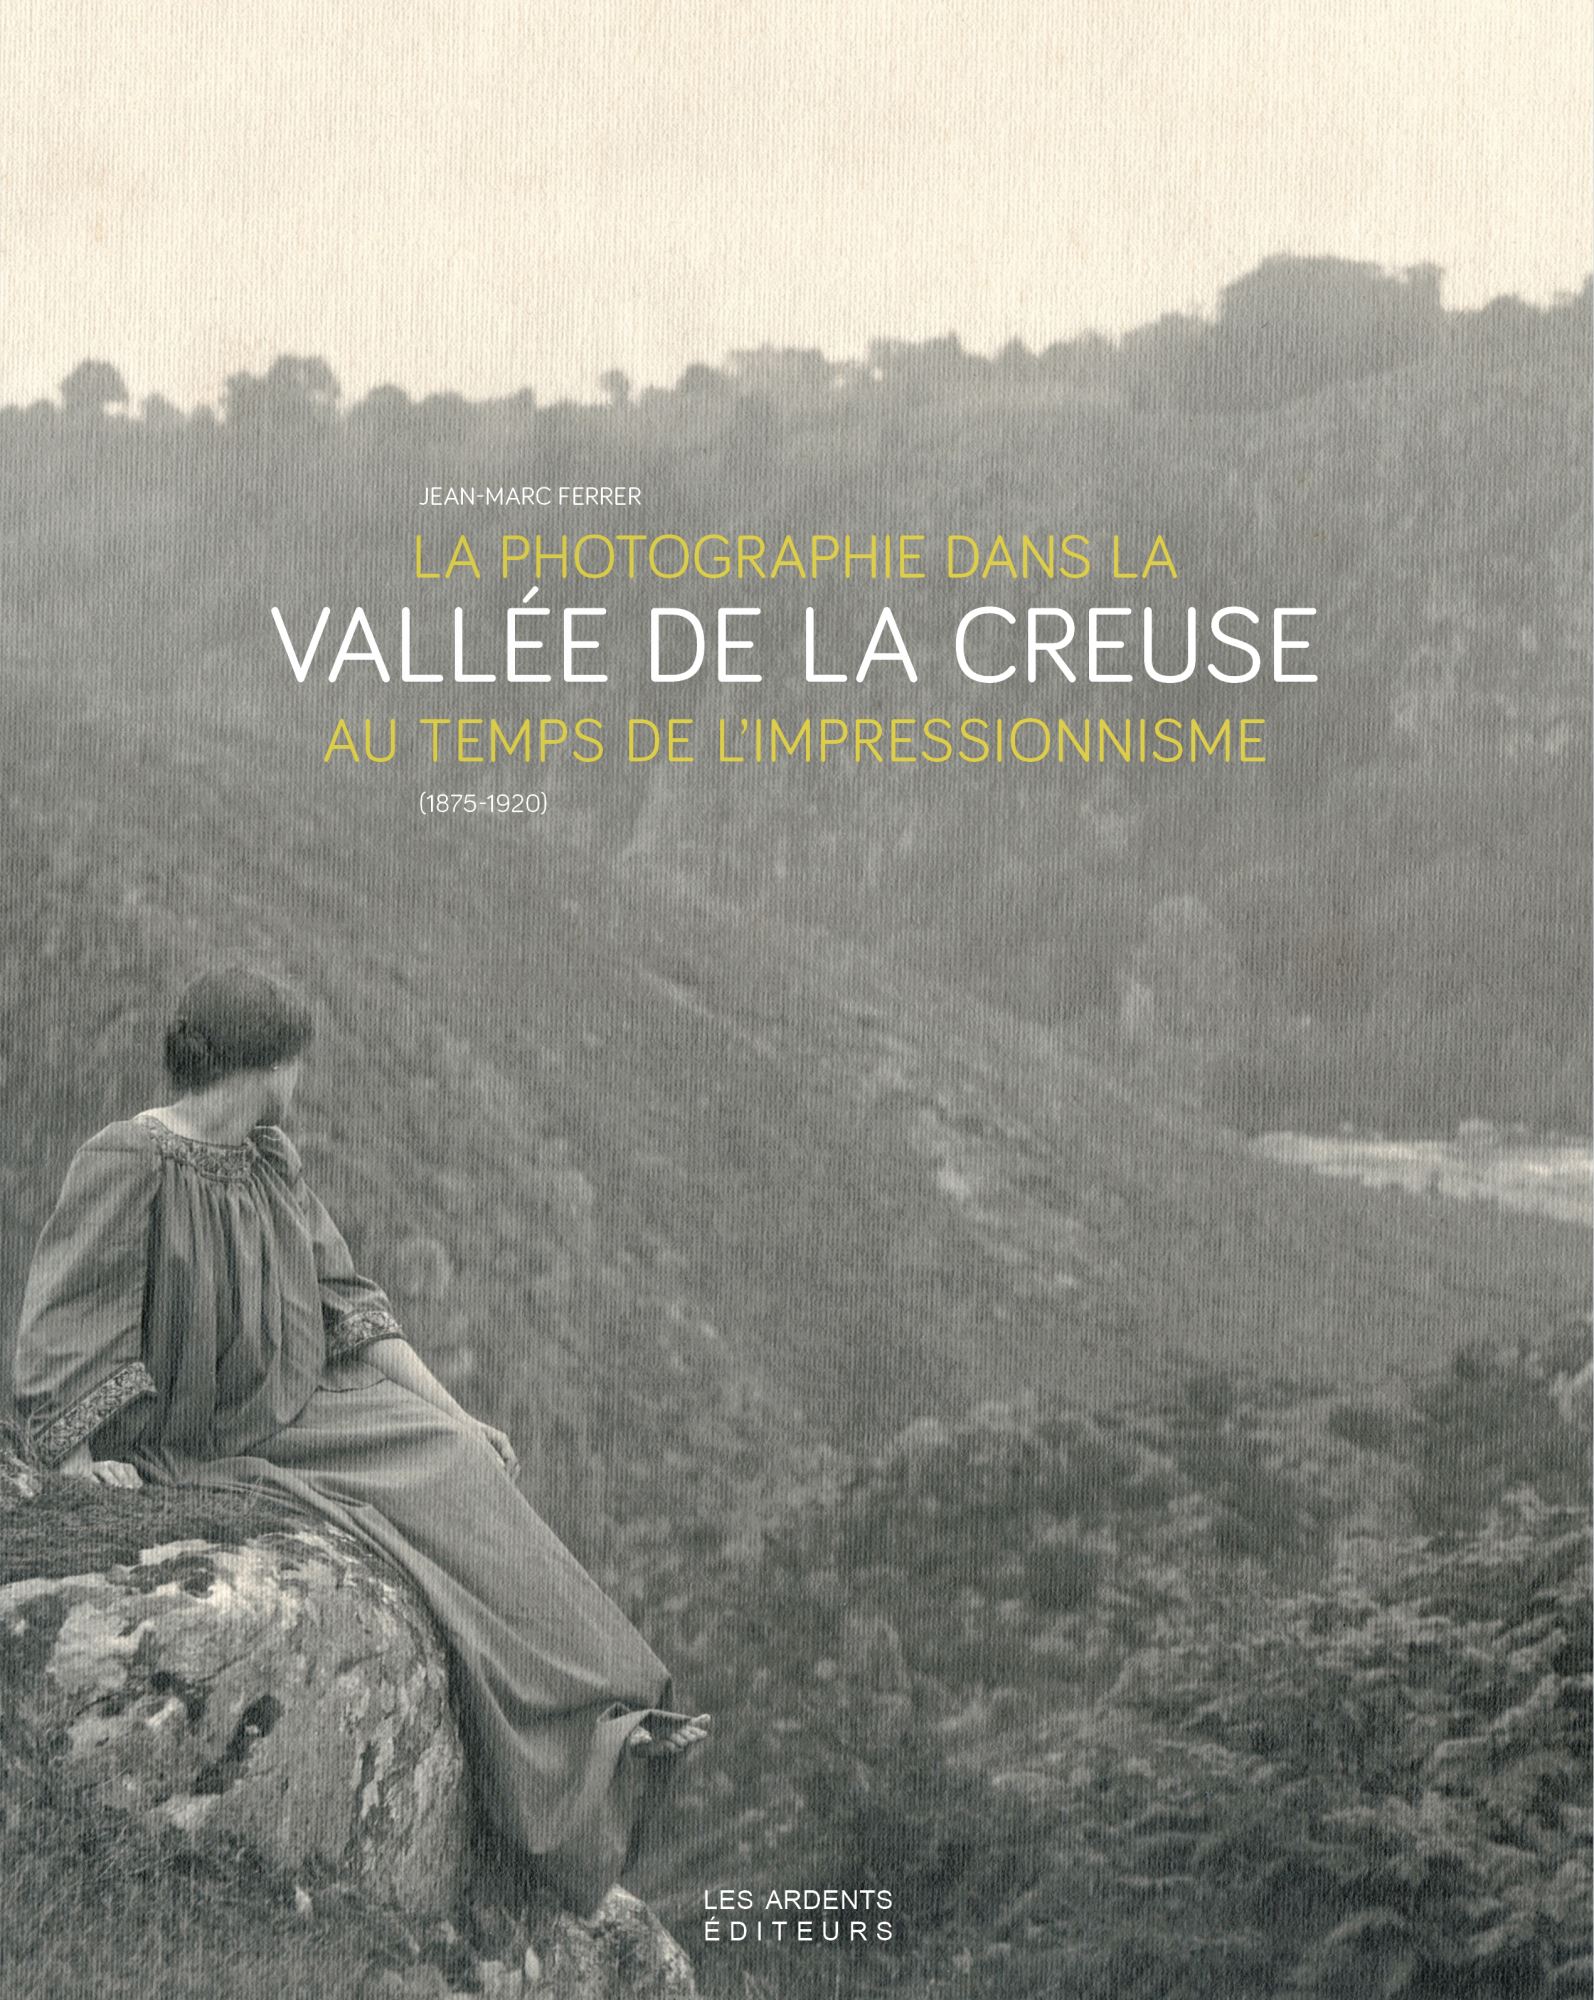 La photographie dans la vallée de la Creuse au temps de l’impressionnisme (1875-1920)